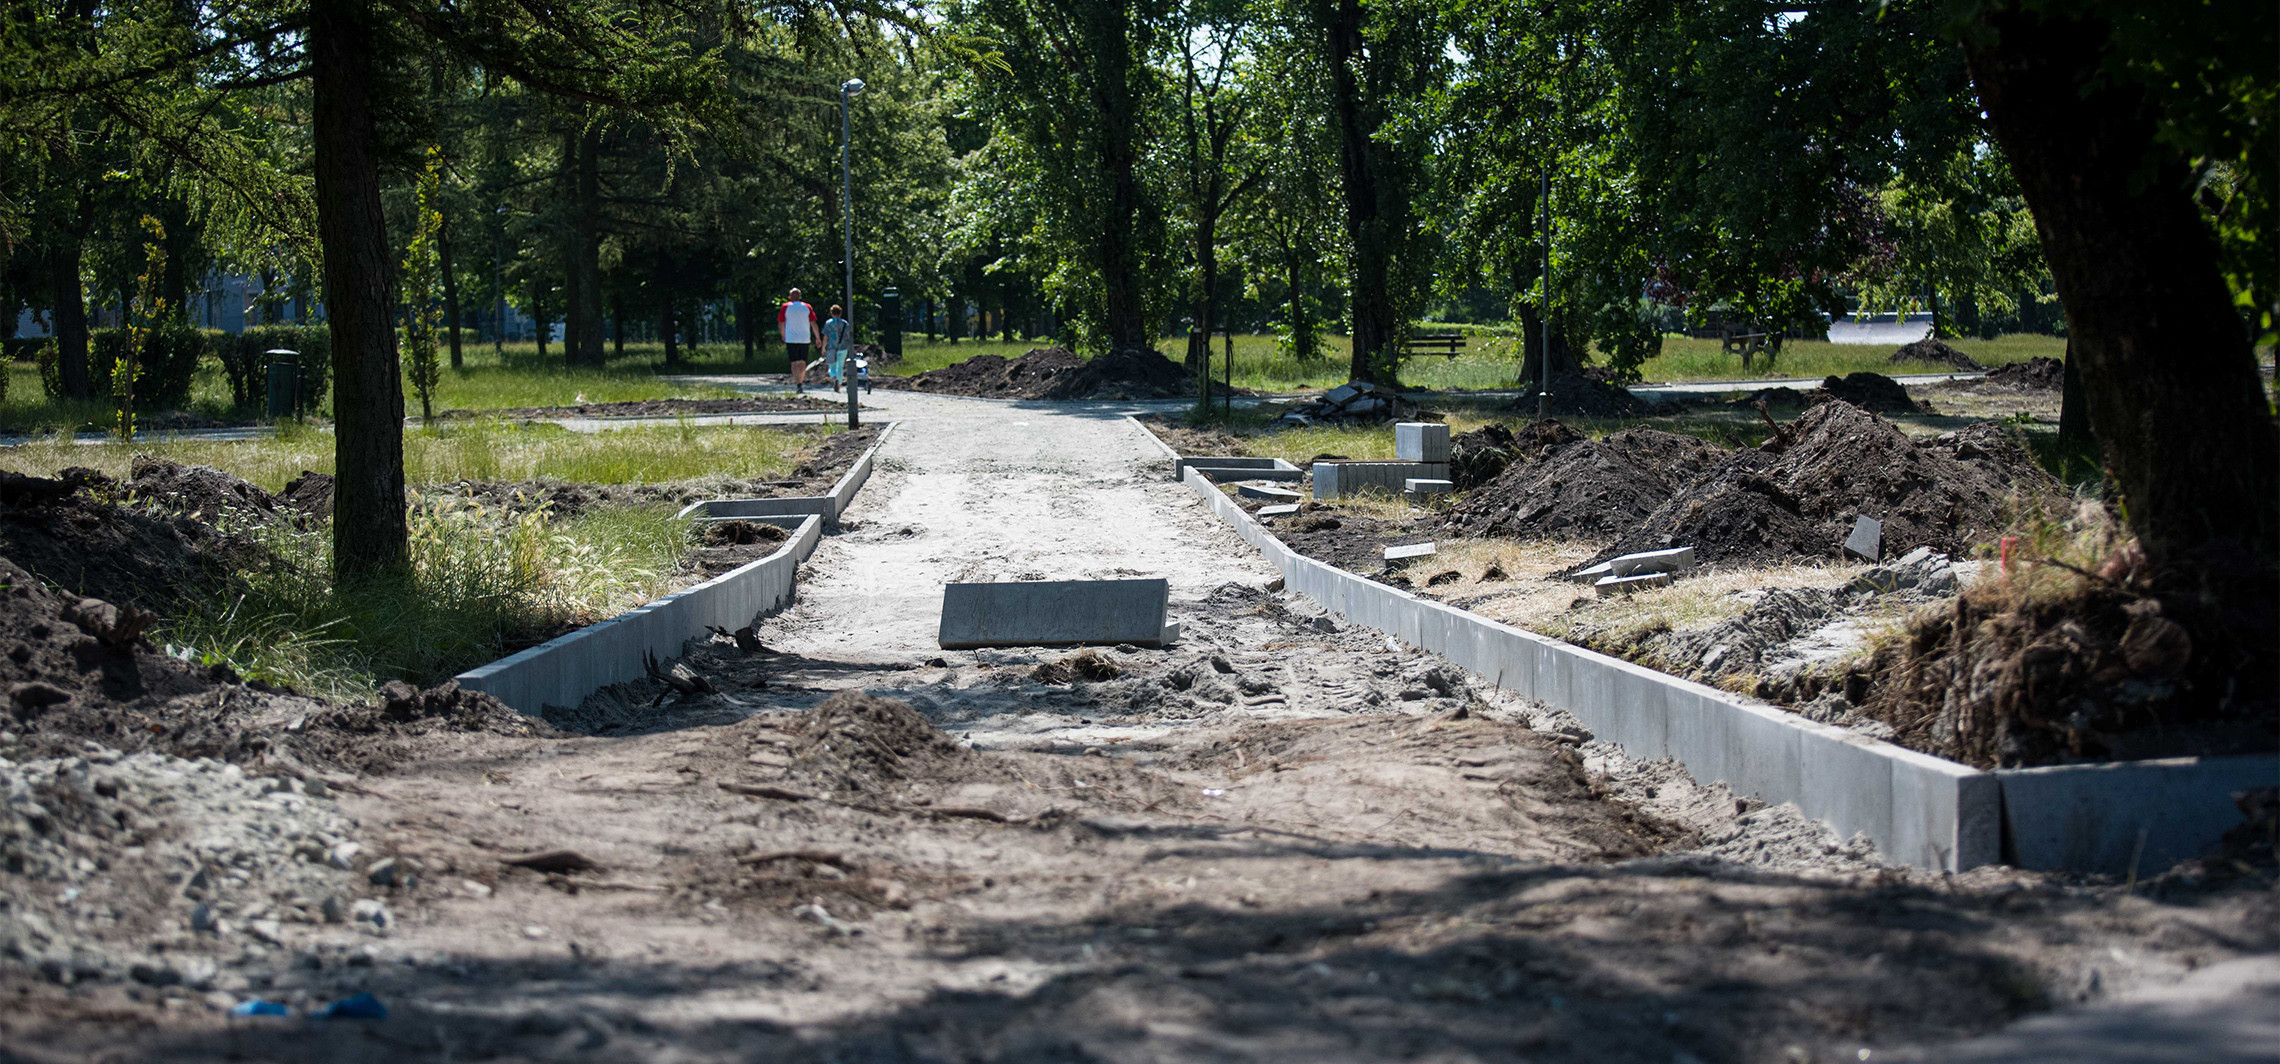 Inowrocław - W rejonie skate parku przybędzie chodników